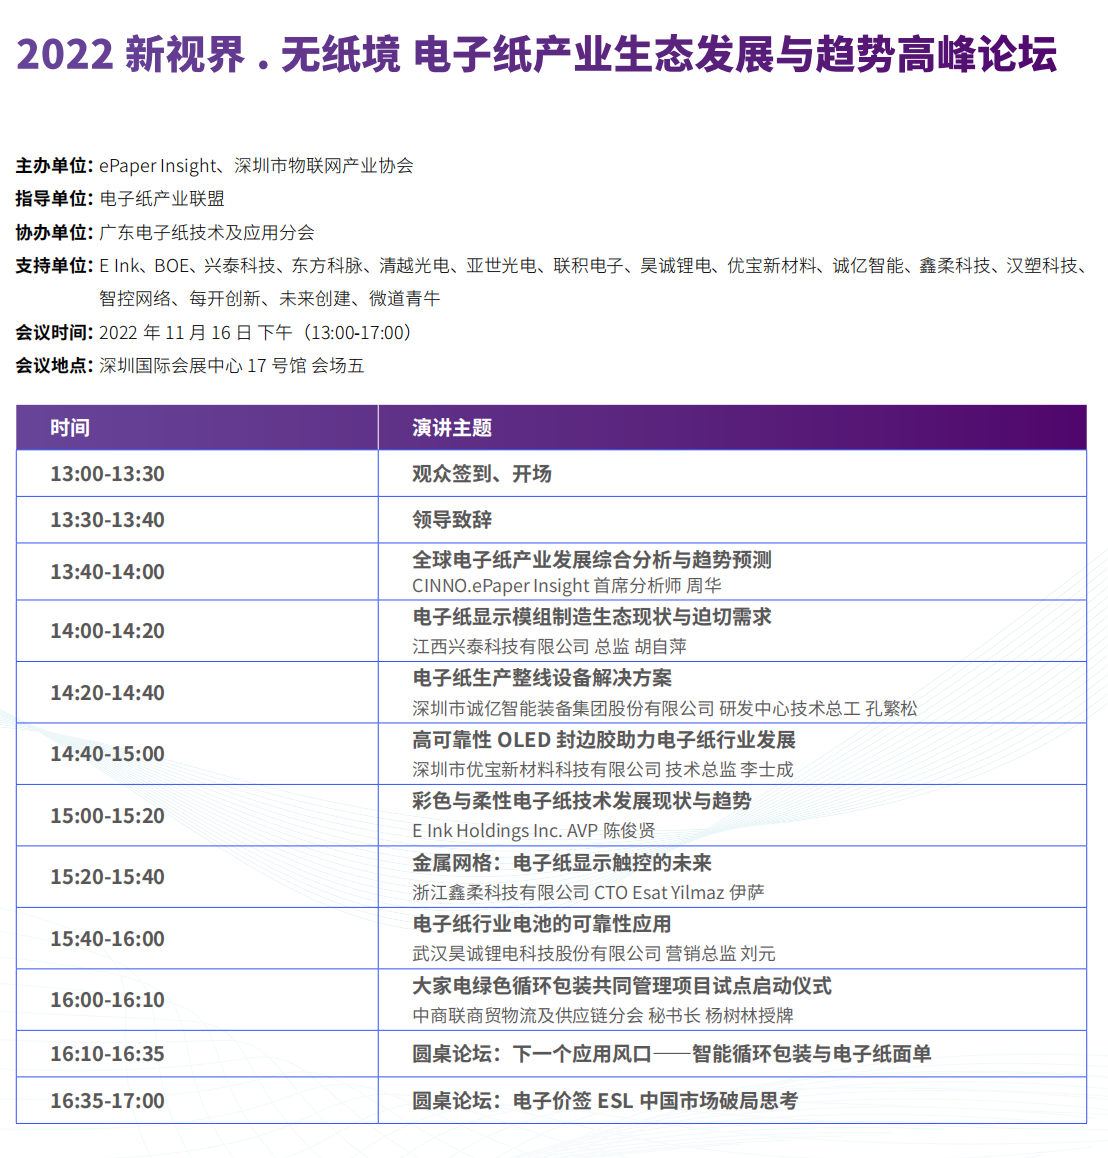 2022深圳站 参观指南-1105-最后一眼-定稿_64.png